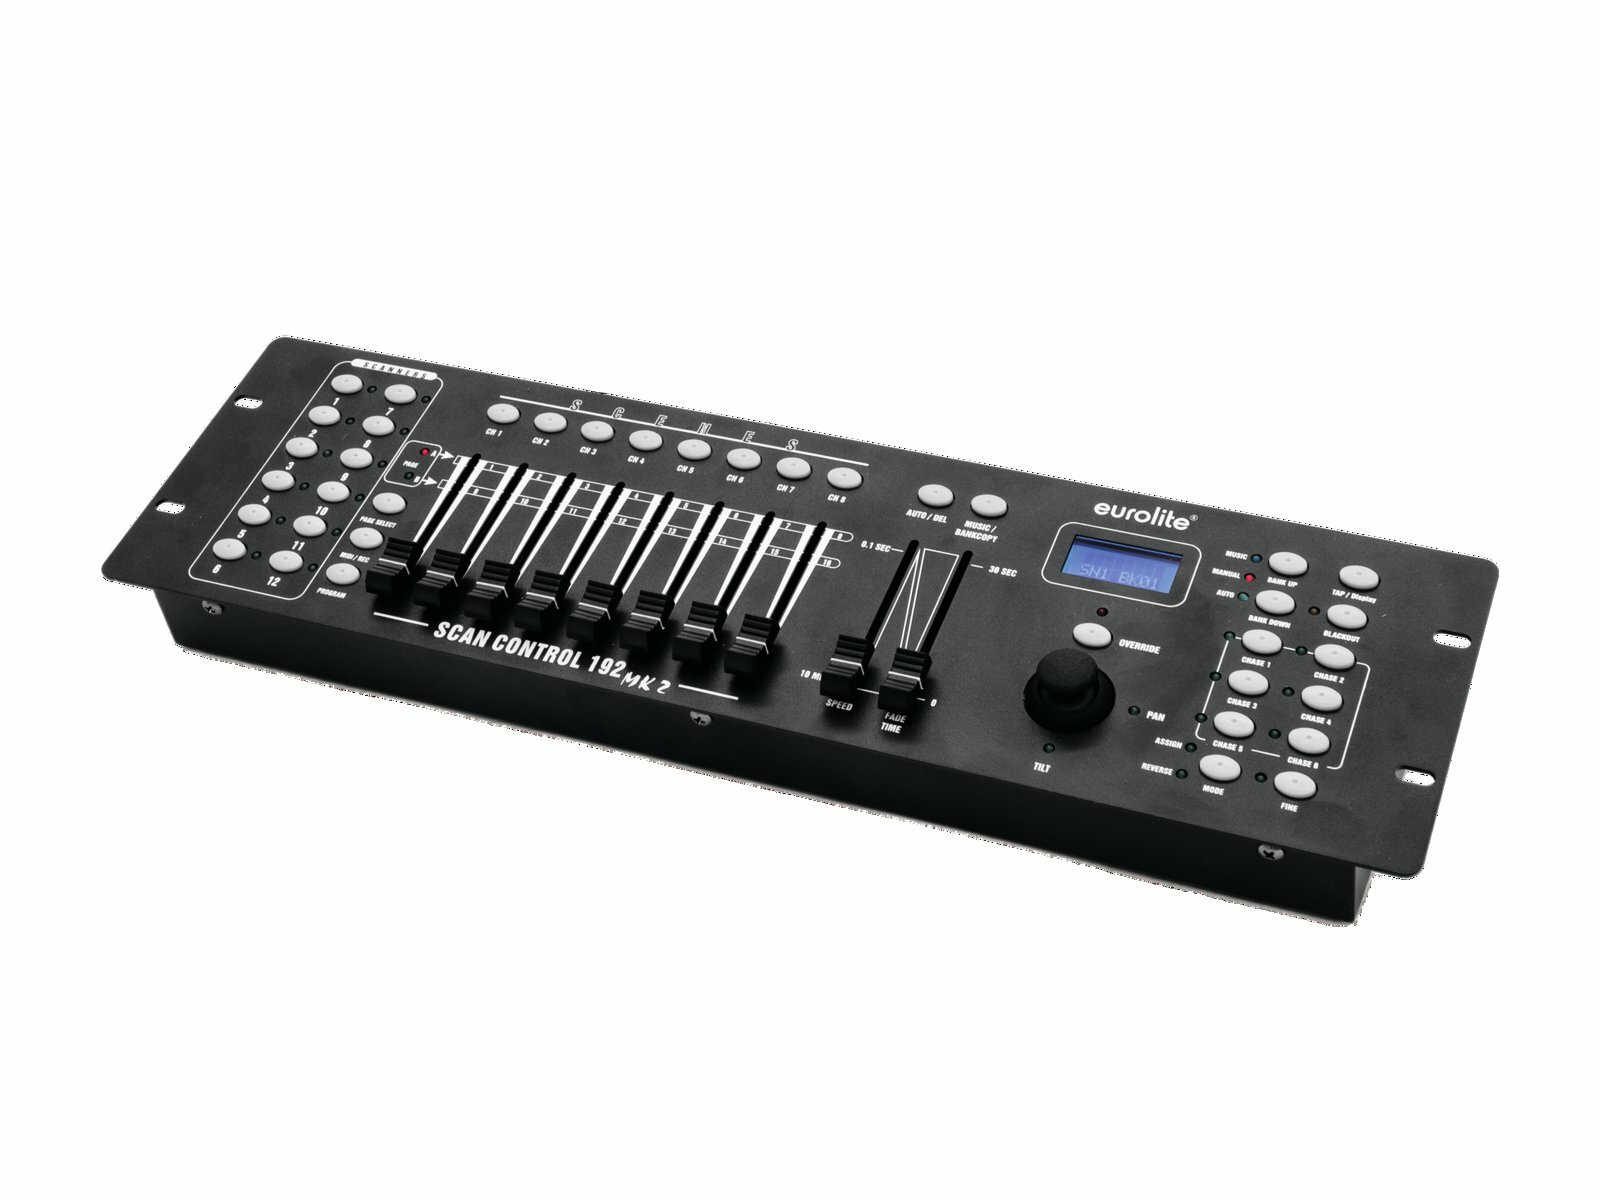 Eurolite DMX Scan Control 192 controller 192-х канальный DMX контроллер управления световыми приборами. 6 чейзеров до 240 шагов, 12 приборов по 16 каналов DMX, 8 фейдеров управления, джойстик. Аудио вход и встроенный микрофон. Переключатель полярности D